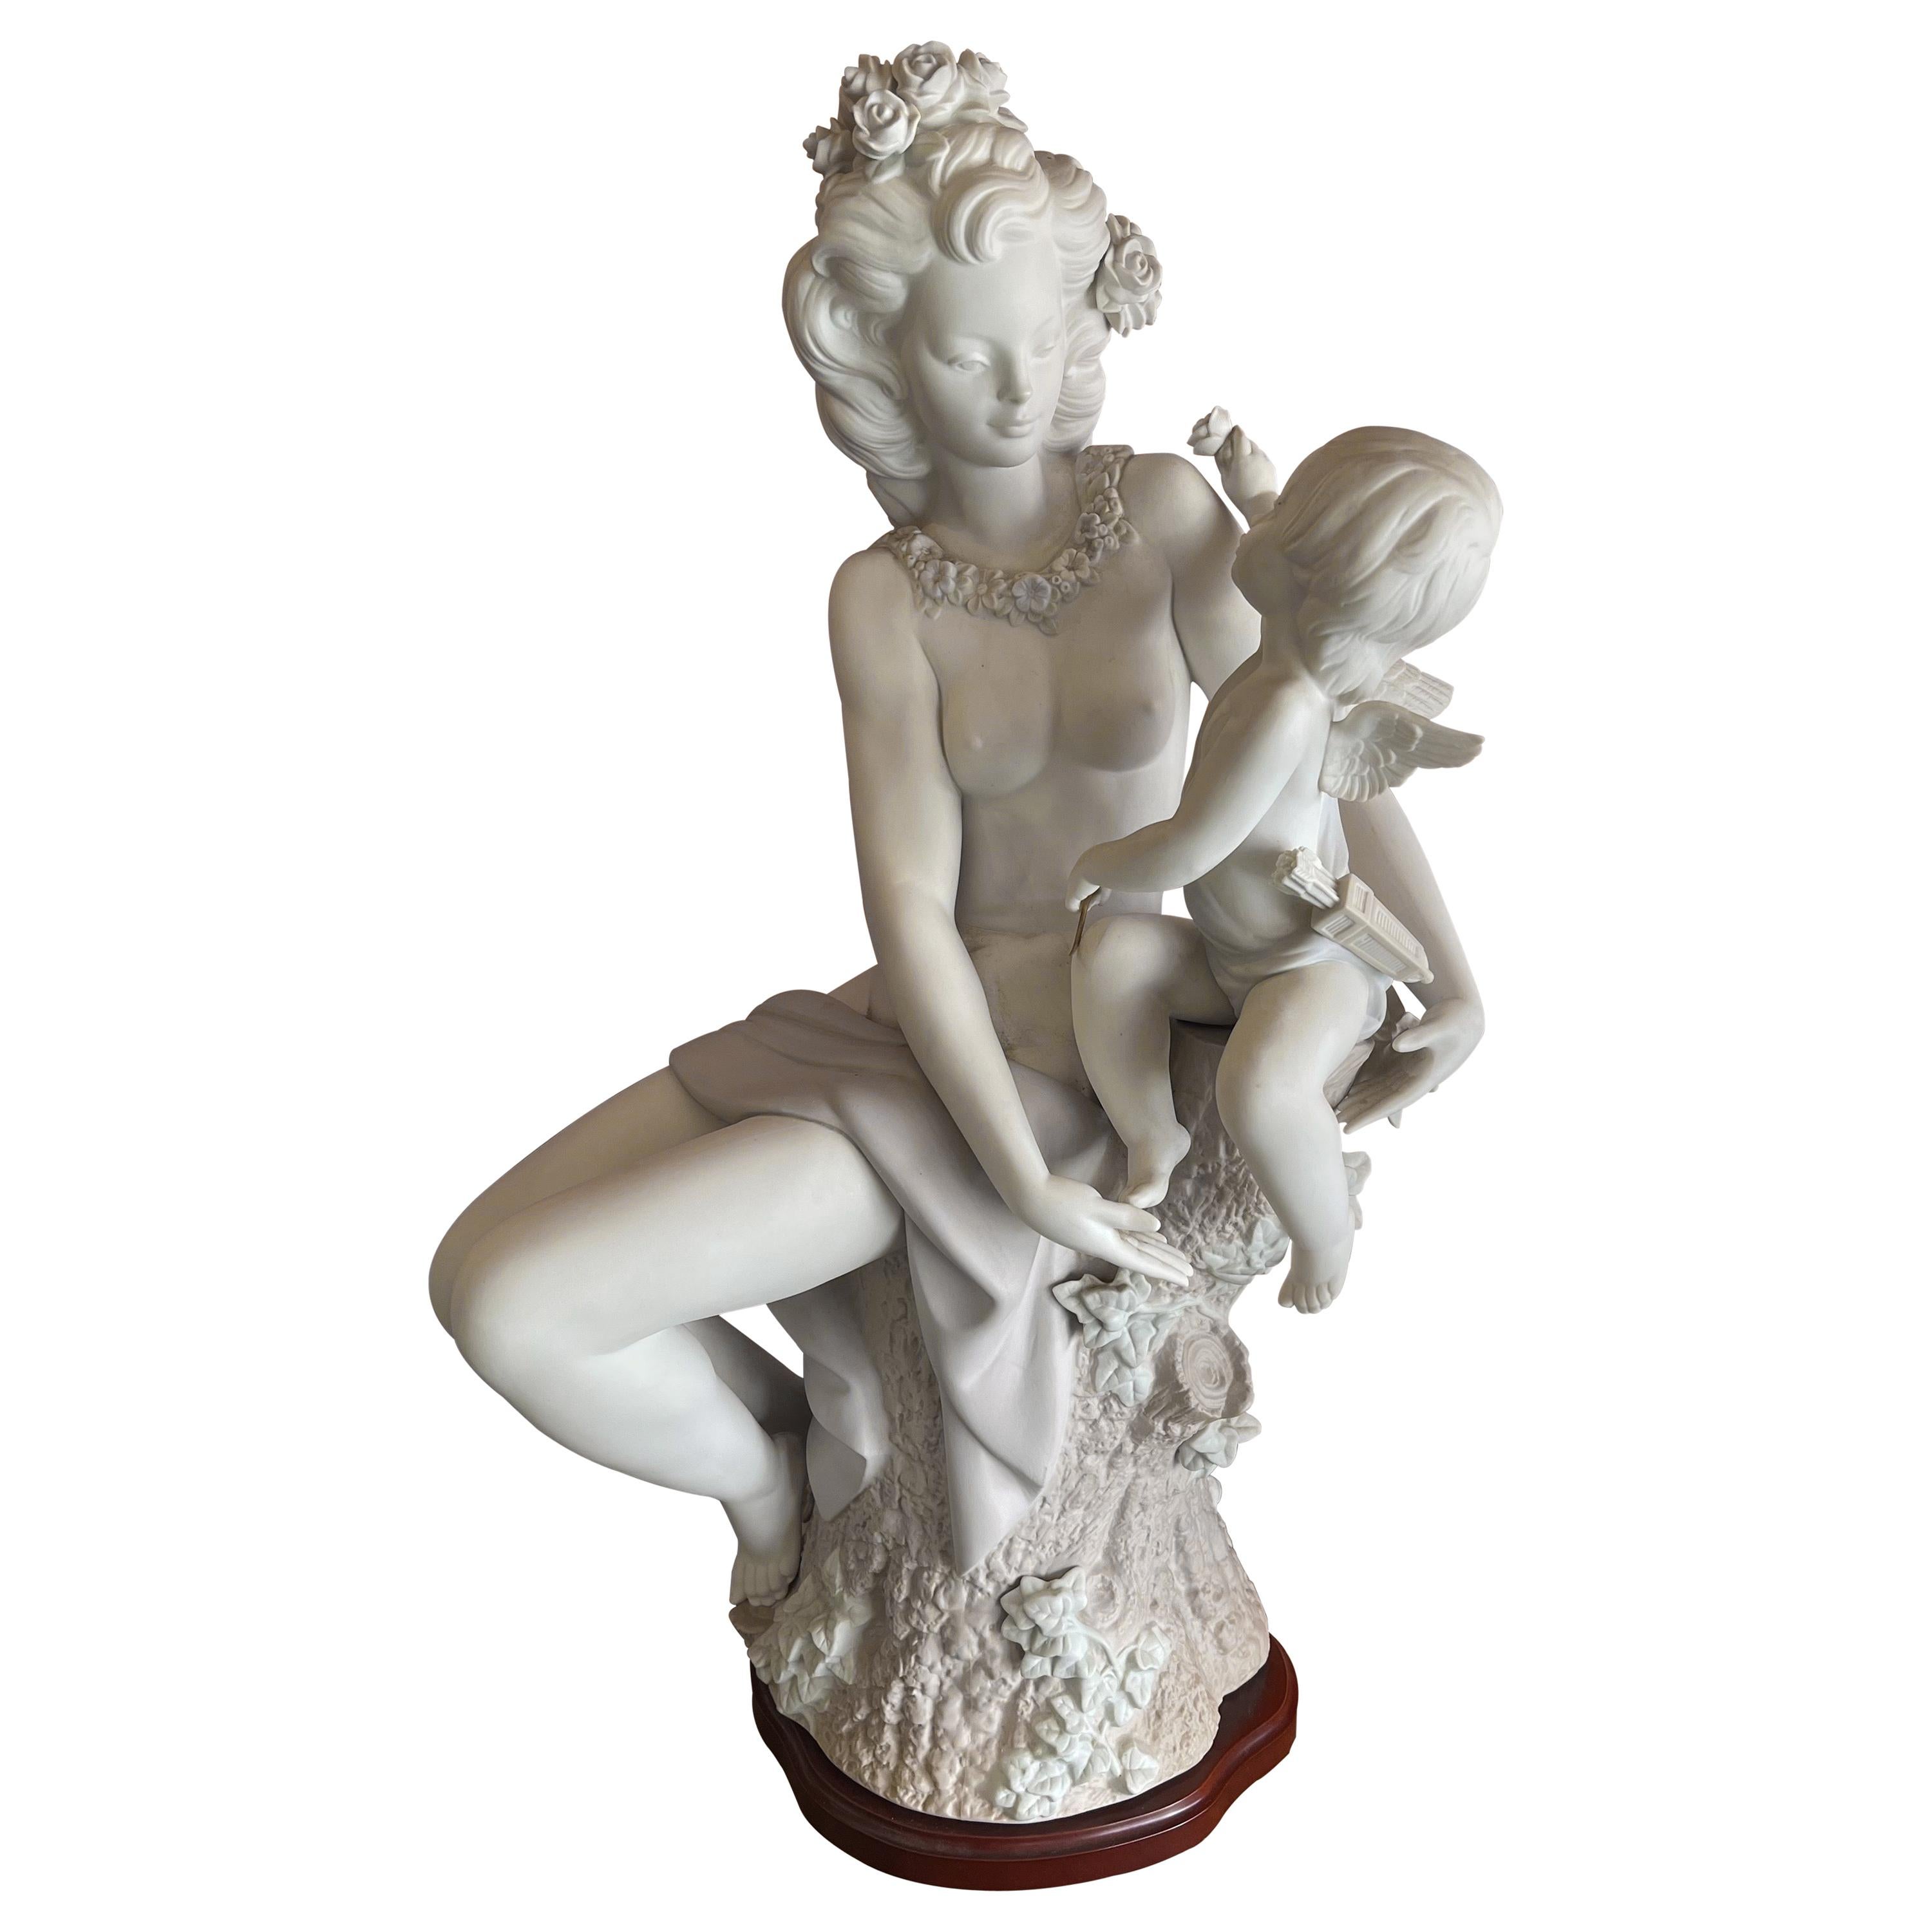 Massive Lladro Figurine "Venus & Cupid" Signed by J. Ruiz and Juan Huerta